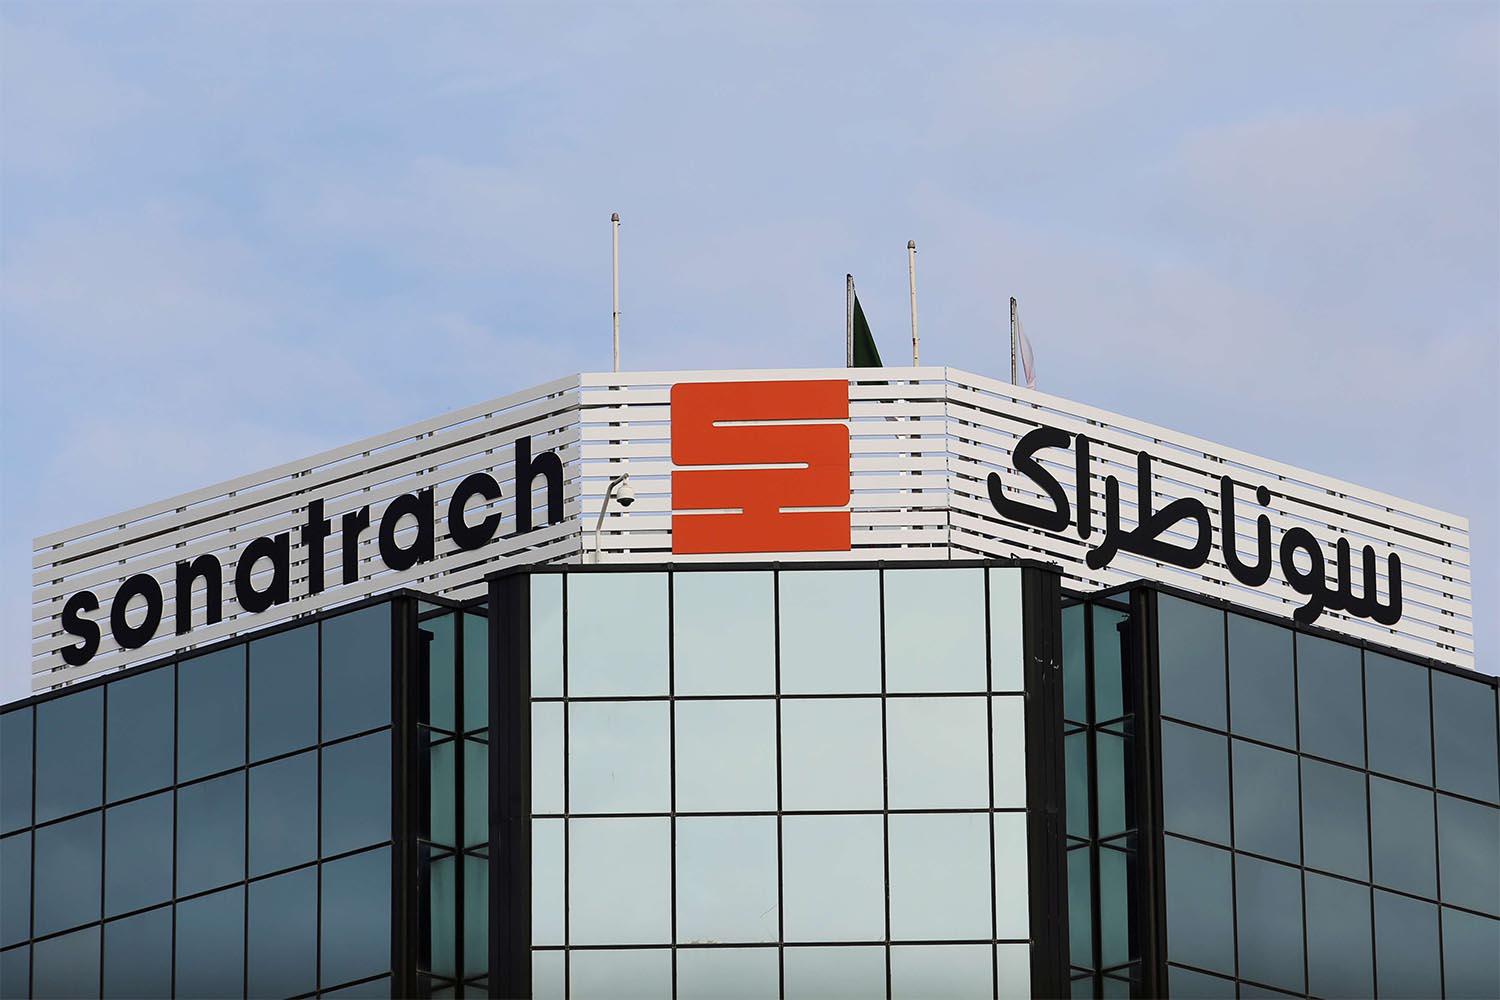 Sonatrach's headquarters in Algiers